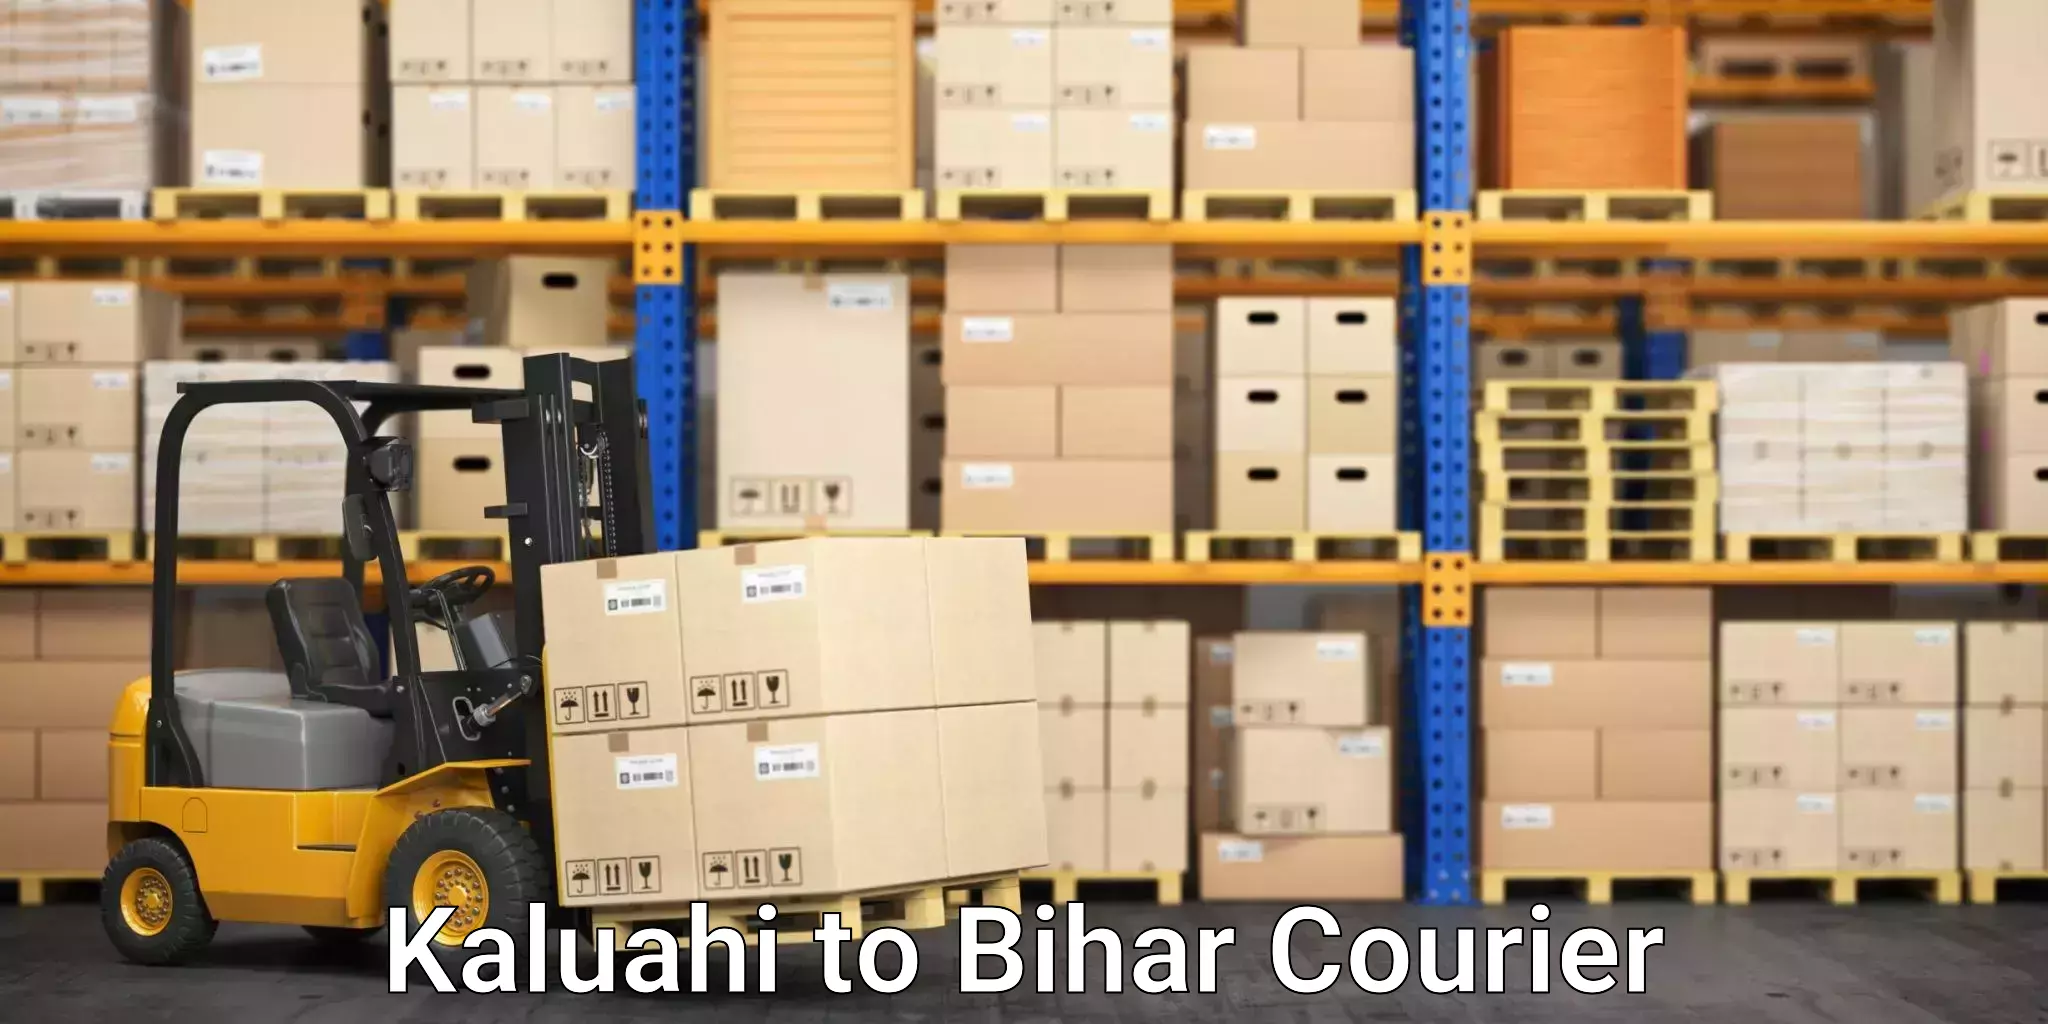 Trusted home movers Kaluahi to Bihar